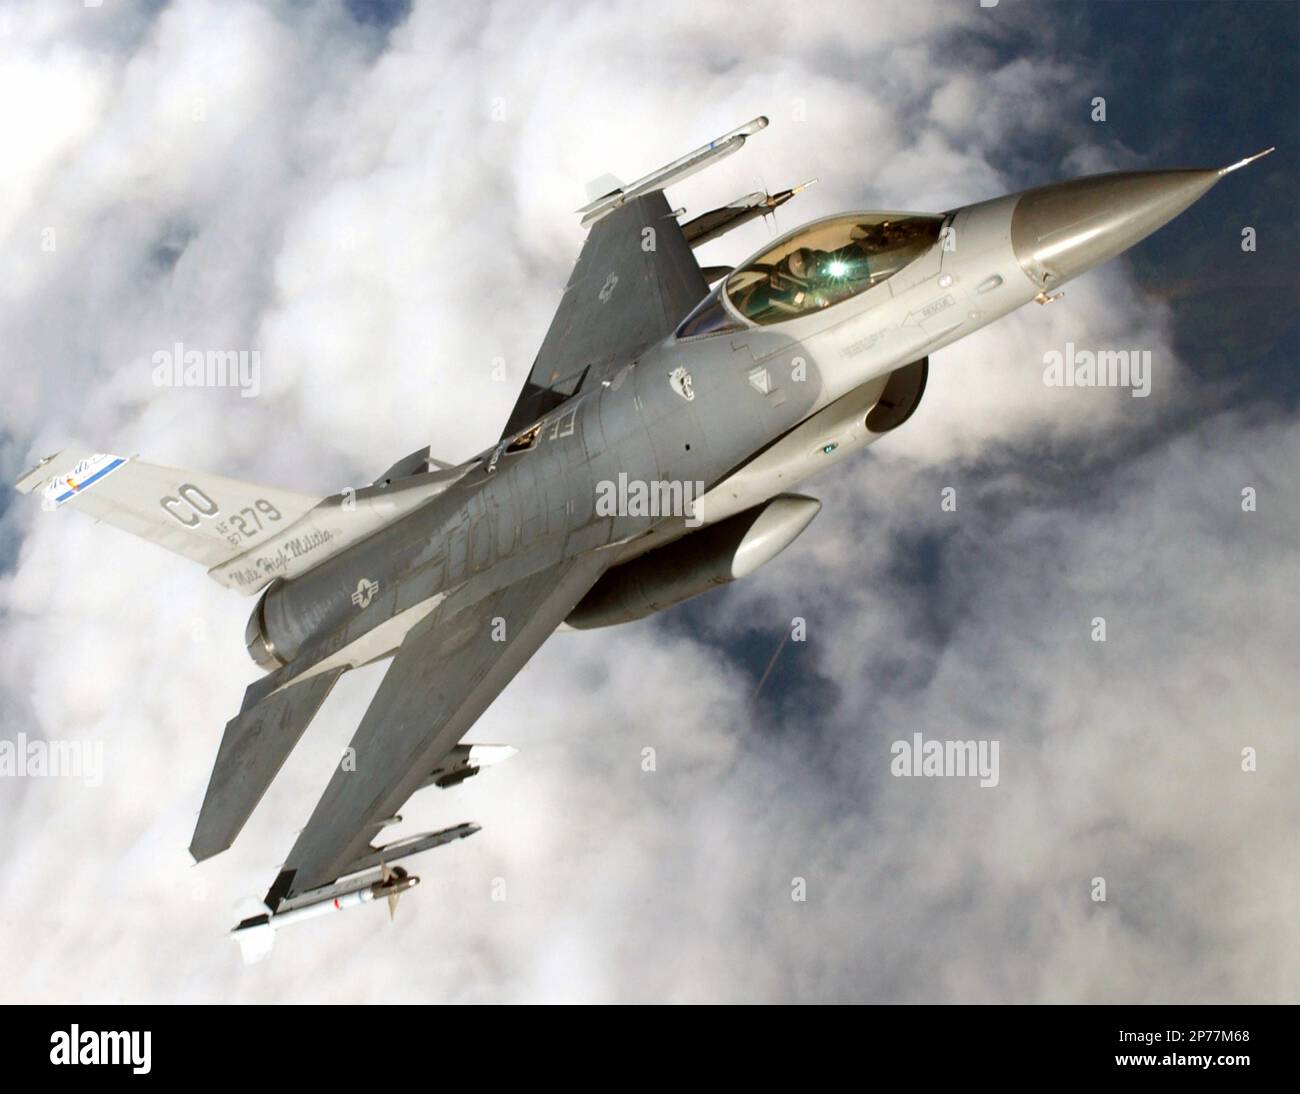 GENERAL DYNAMICS F-16 kämpft gegen Falcon-Multirollenjäger. Eine F-16C der Colorado Air National Guard bewaffnet mit AM-9 Sidewinder-Raketen und einem Treibstofftank in der Mitte im September 2003. Foto: CANG Stockfoto